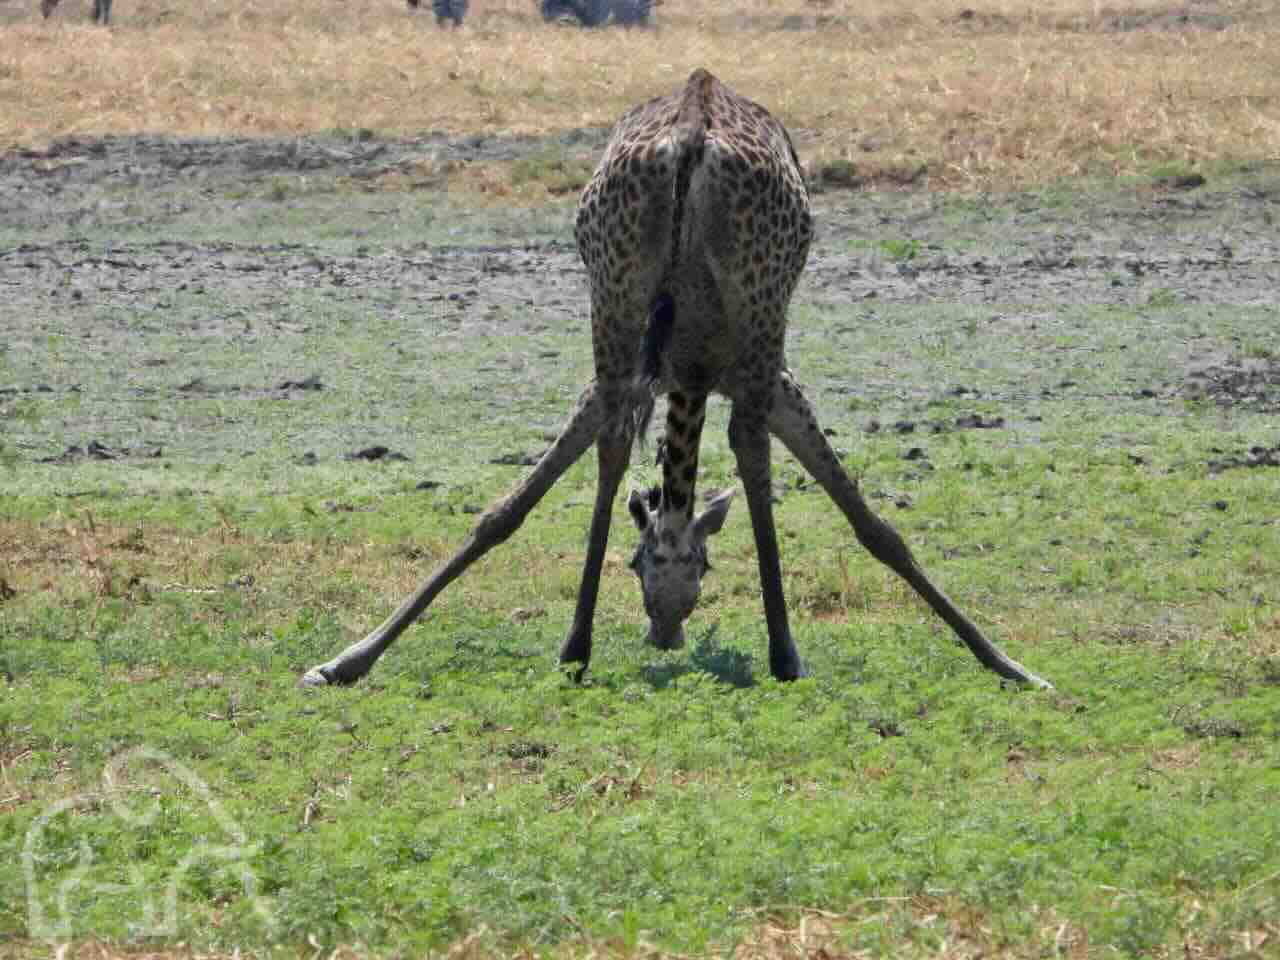 dinkende giraf van achteren met zijnn voorpoten gespreid en de kop in het midden naar beneden precies tussen de voor en achterpoten door grappig tanzania